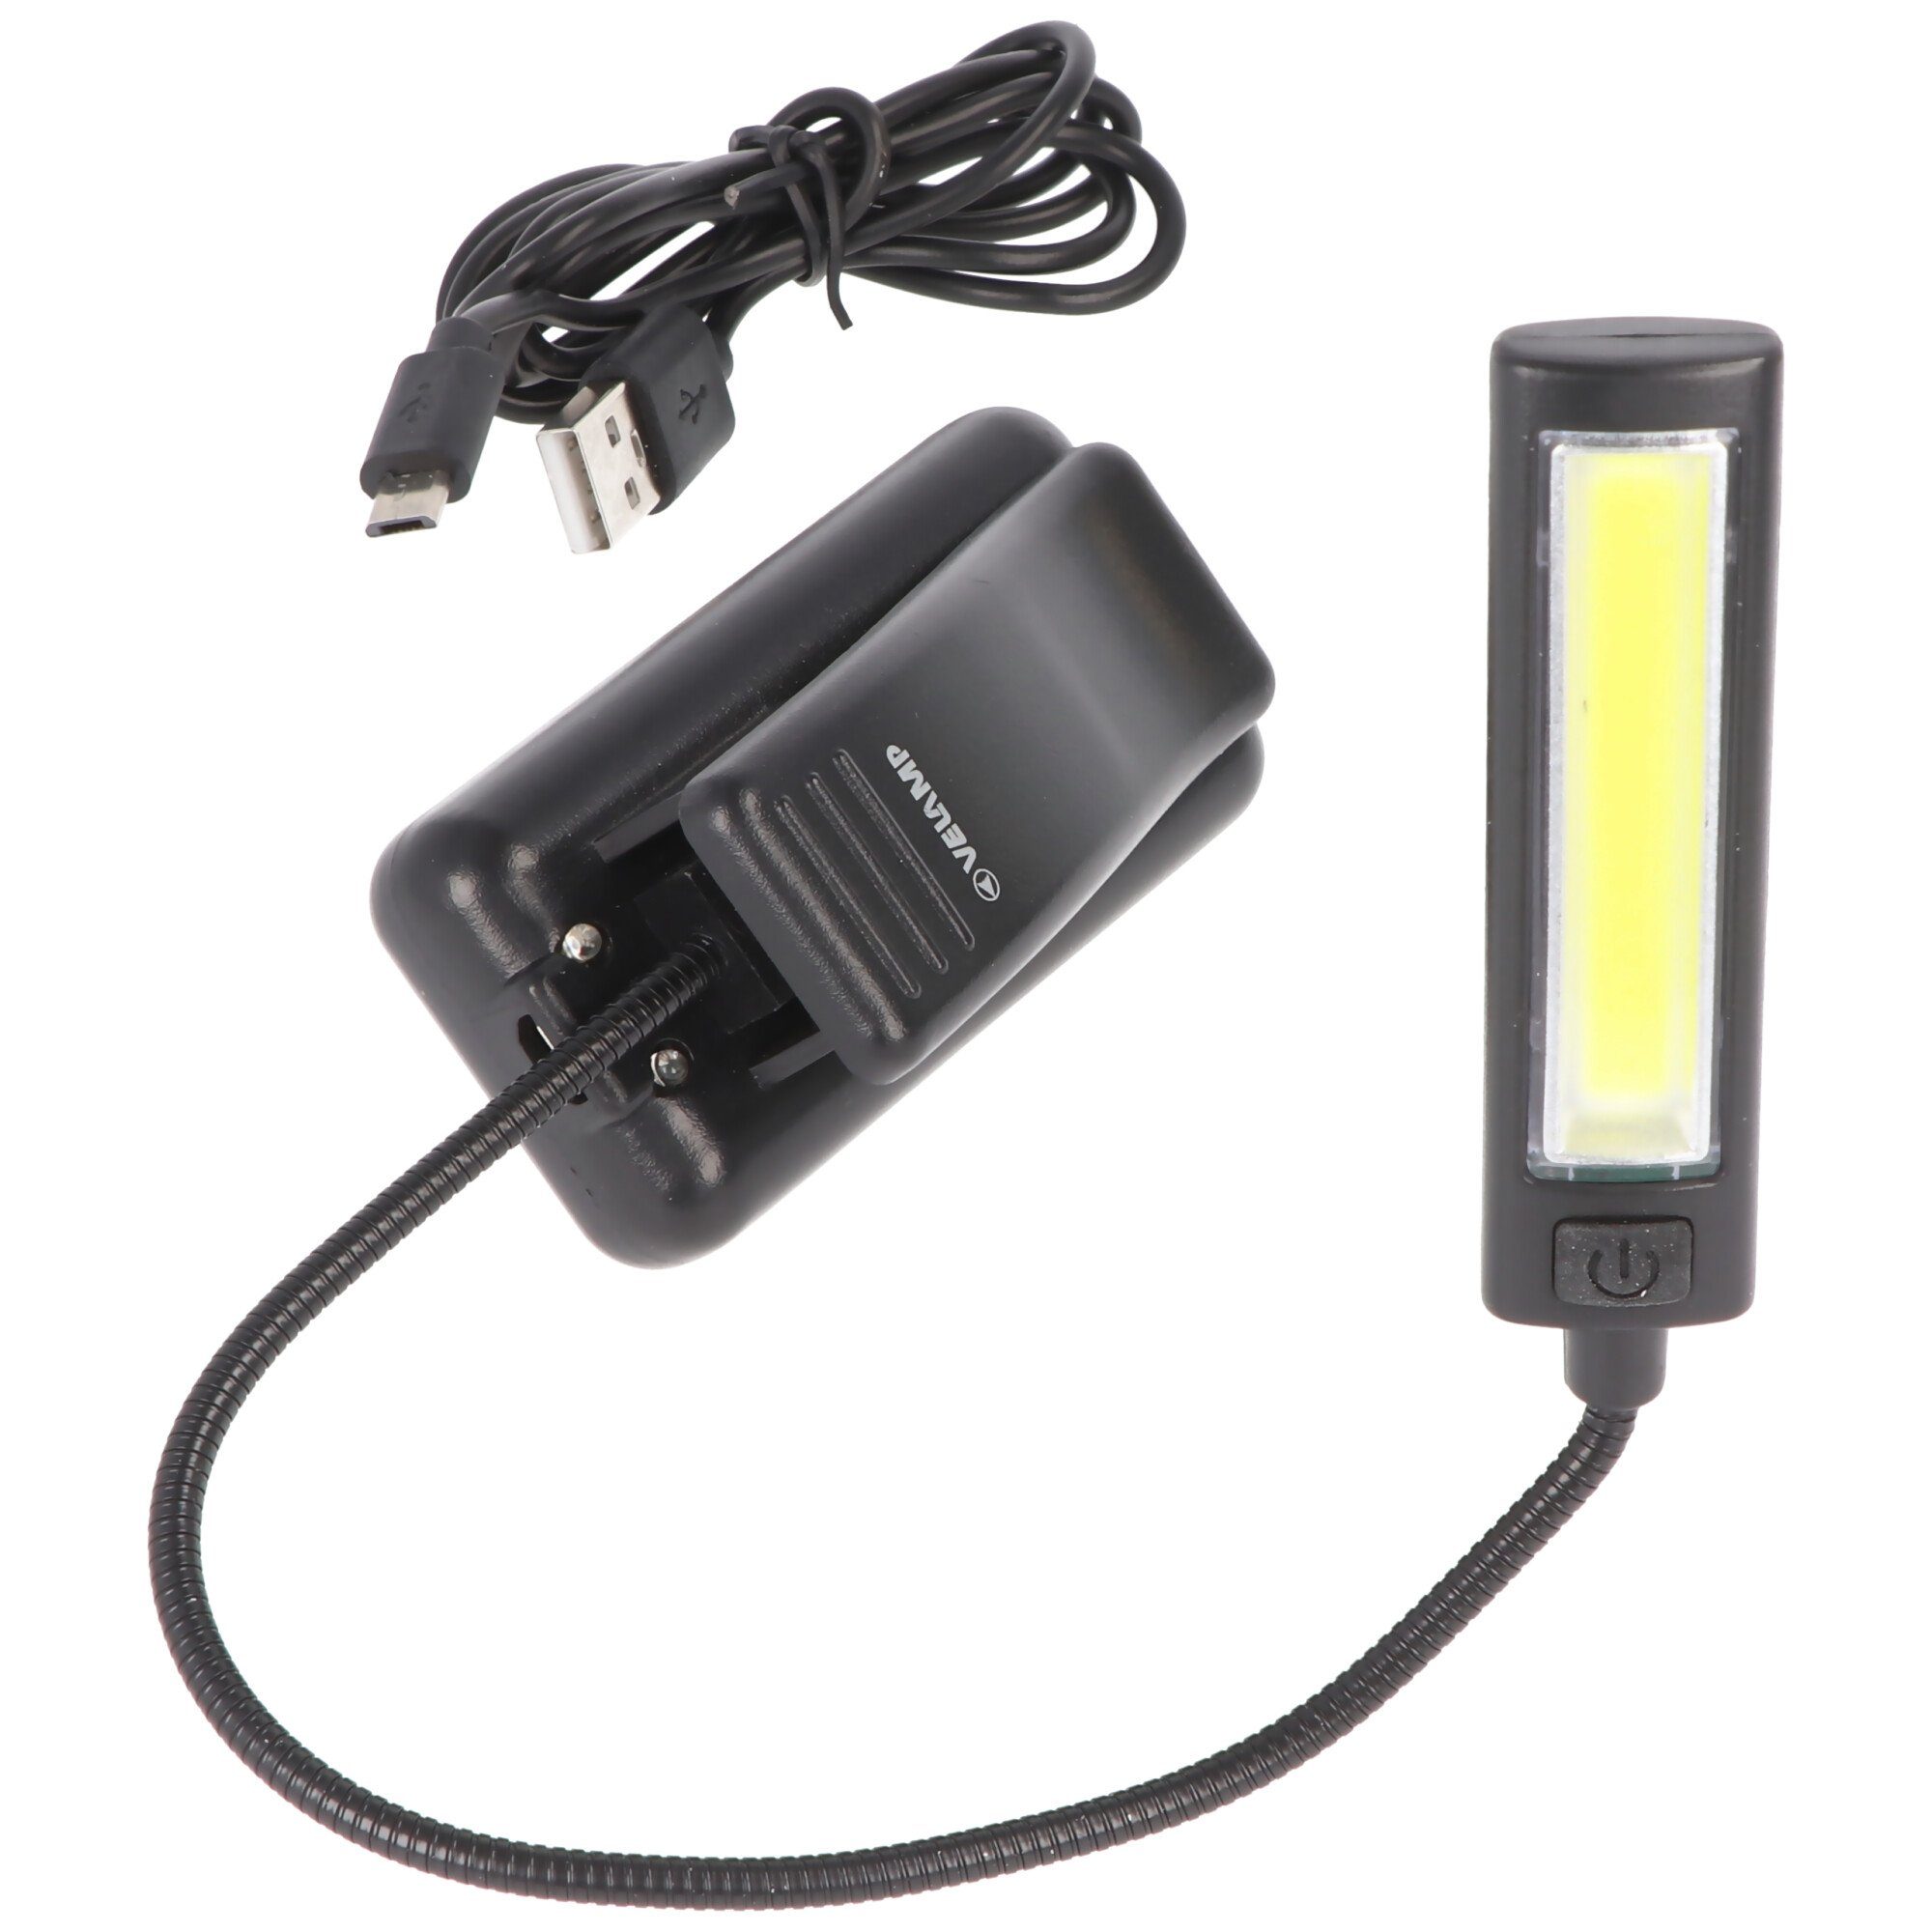 Velamp LED wiederaufladbar, inklus Taschenlampe mit 2W, Clip, 3 LED-Leseleuchte Leuchtstufen